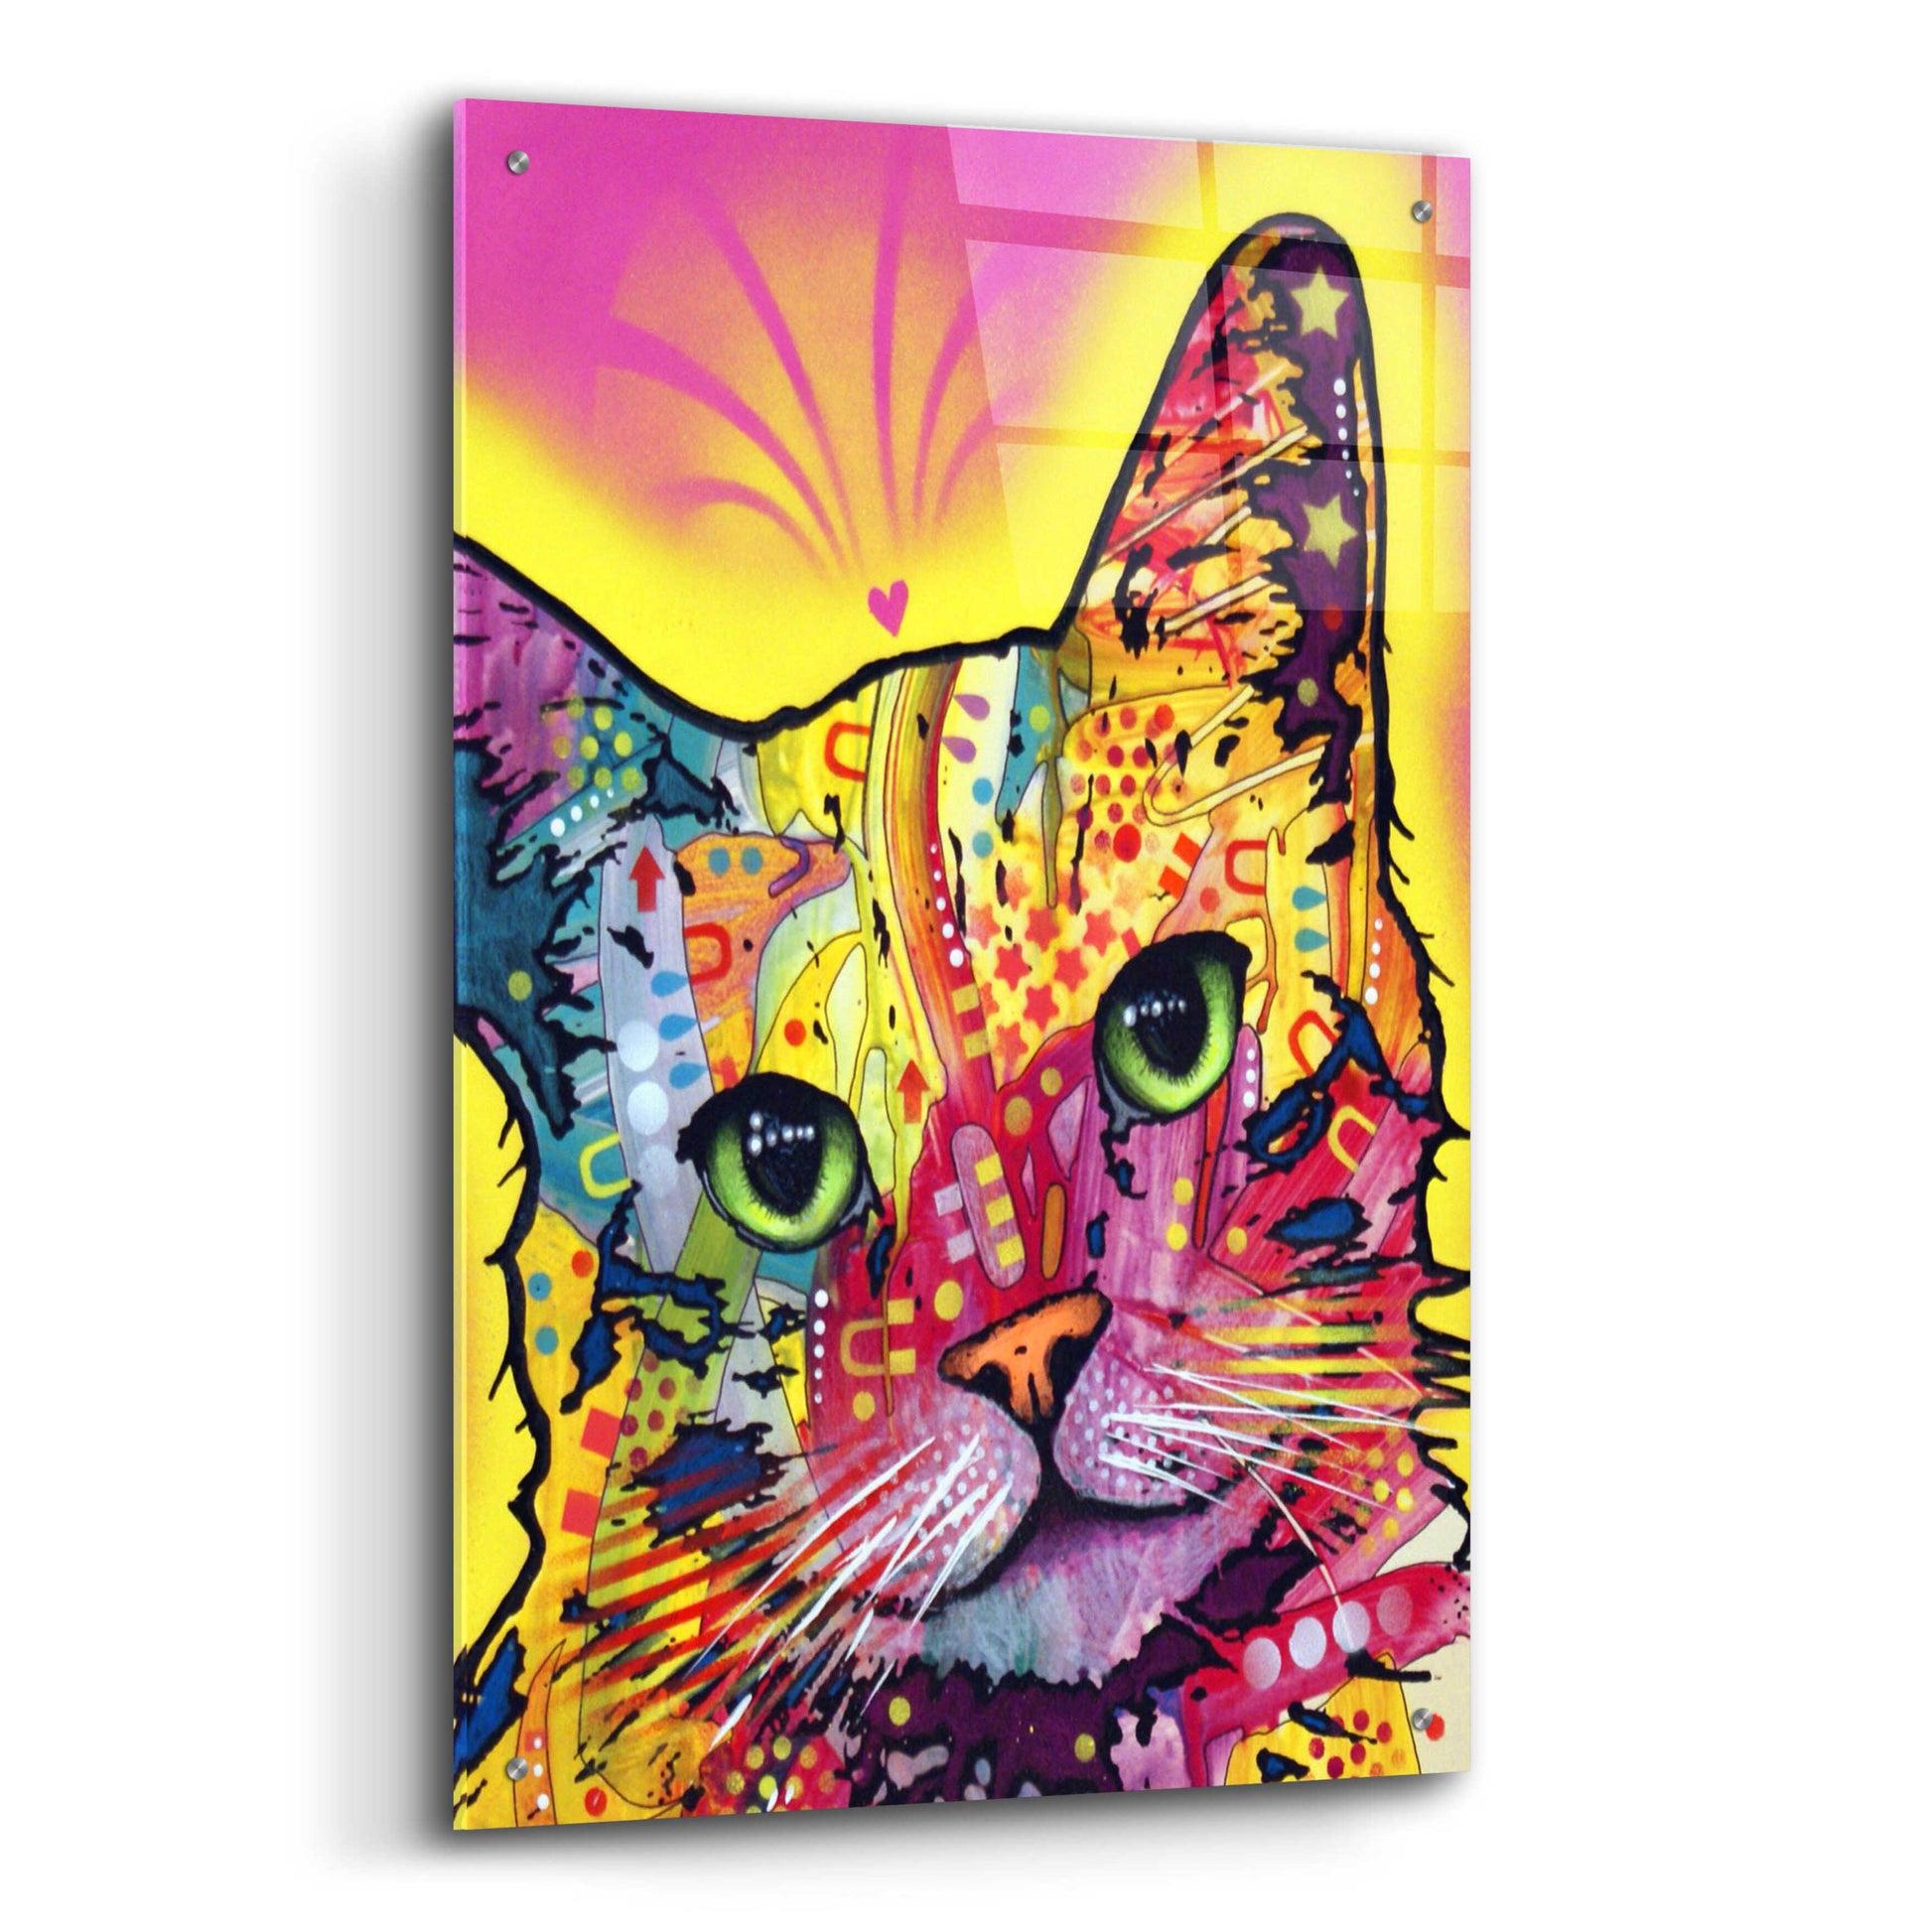 Epic Art 'Tilt Cat I' by Dean Russo, Acrylic Glass Wall Art,24x36